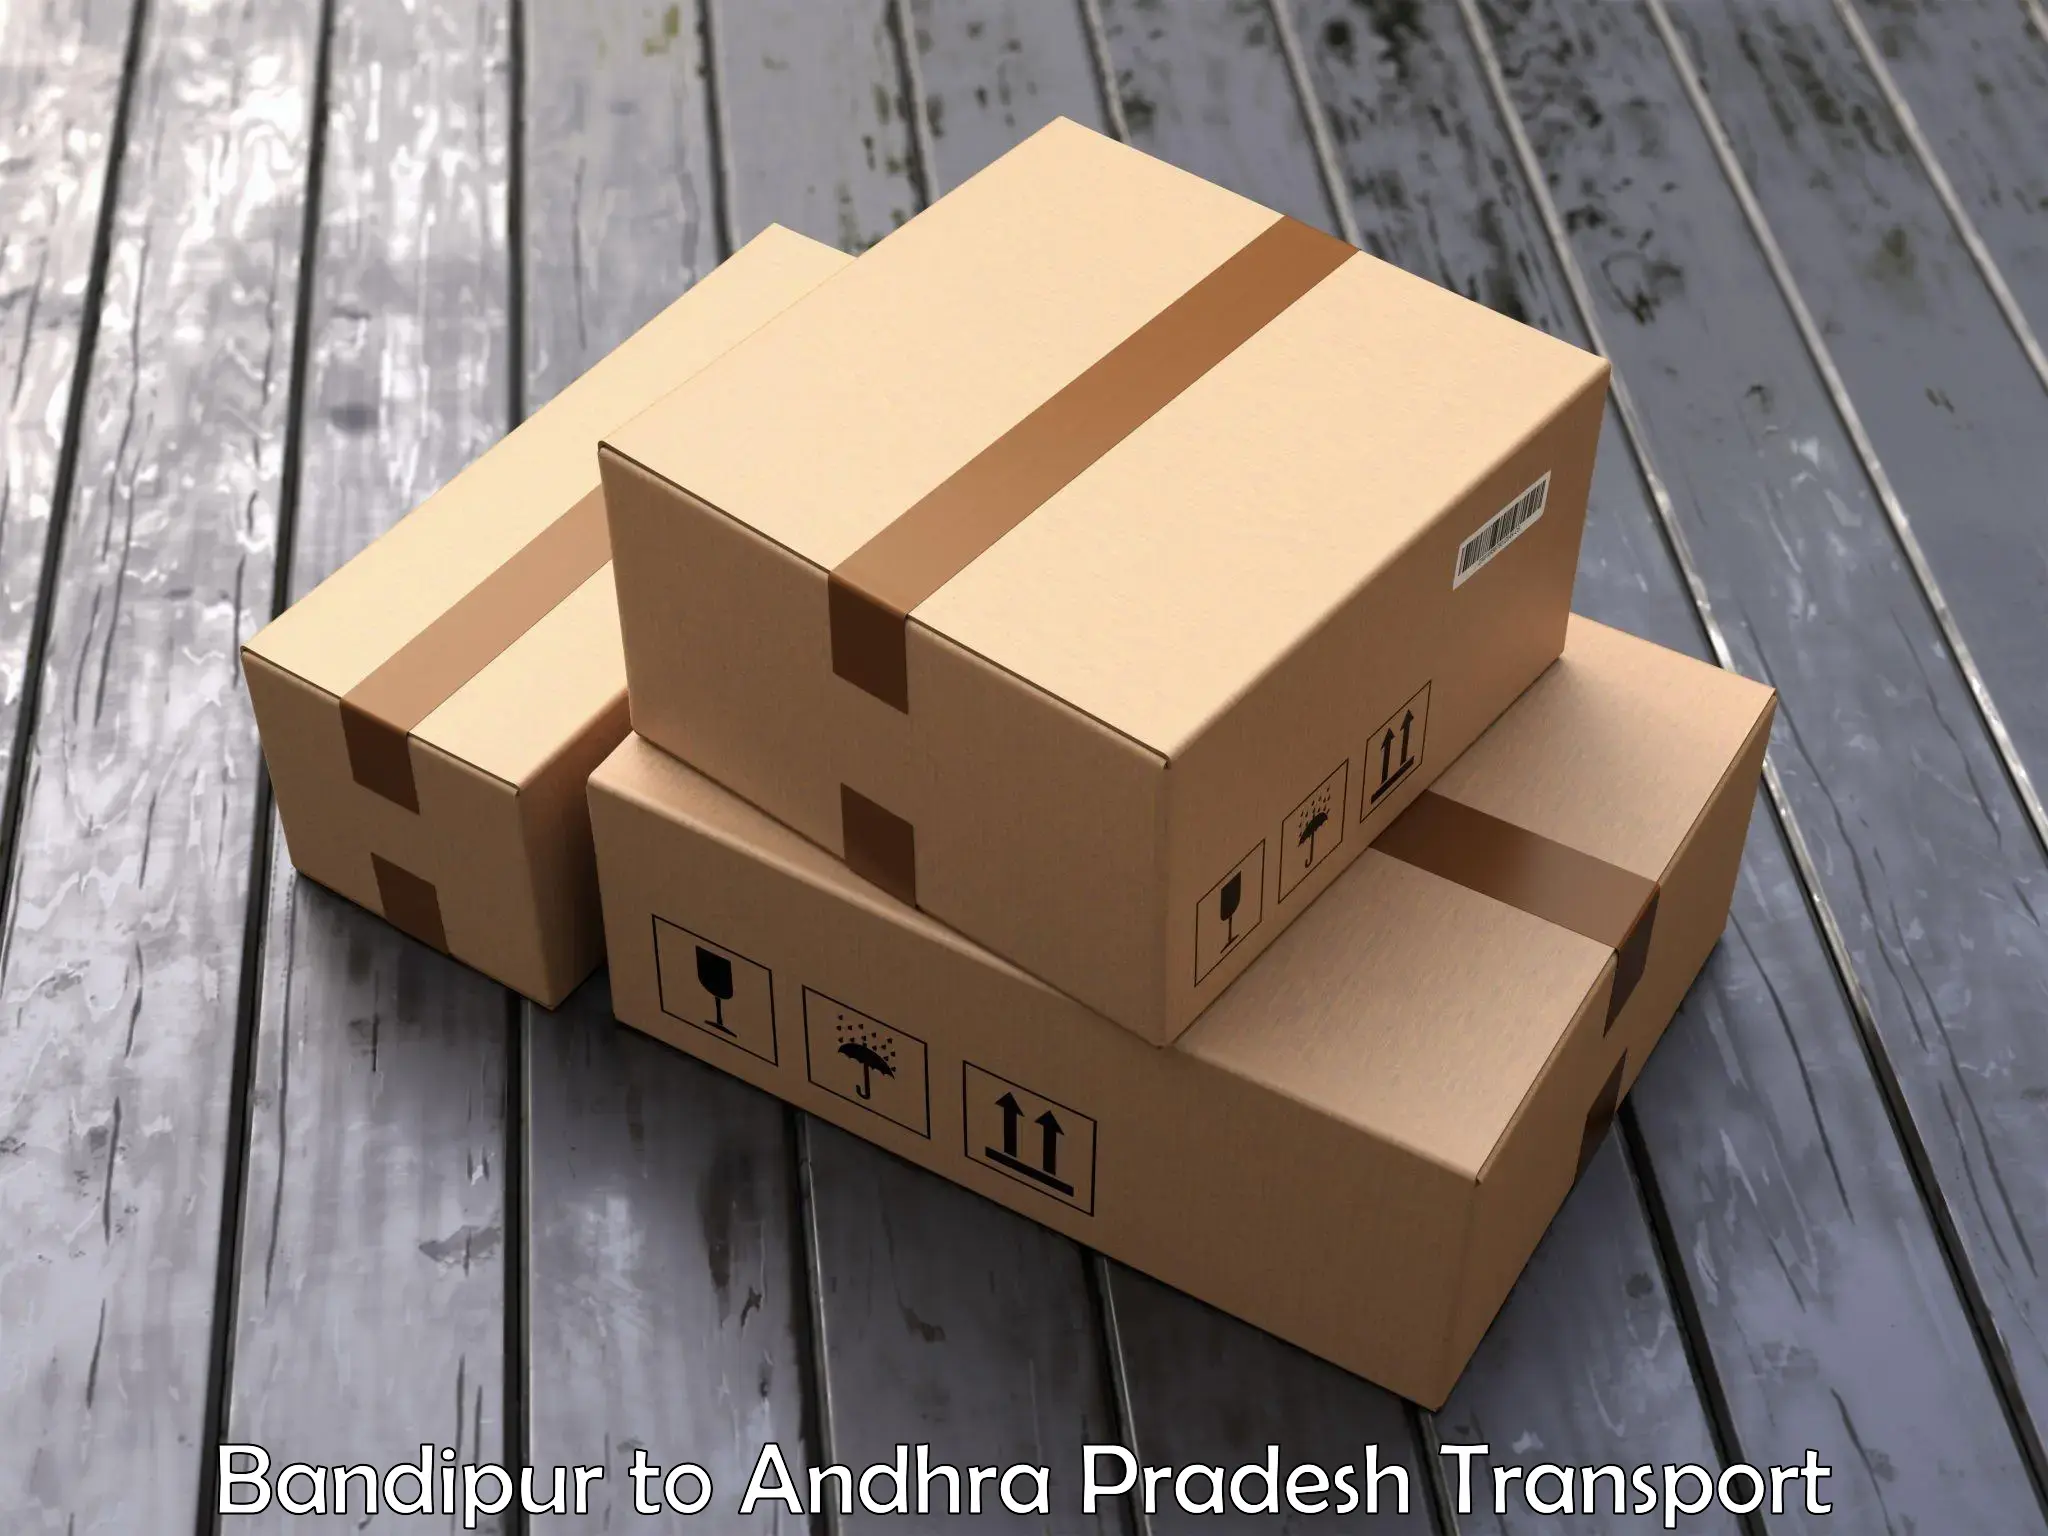 Two wheeler parcel service Bandipur to Velgodu